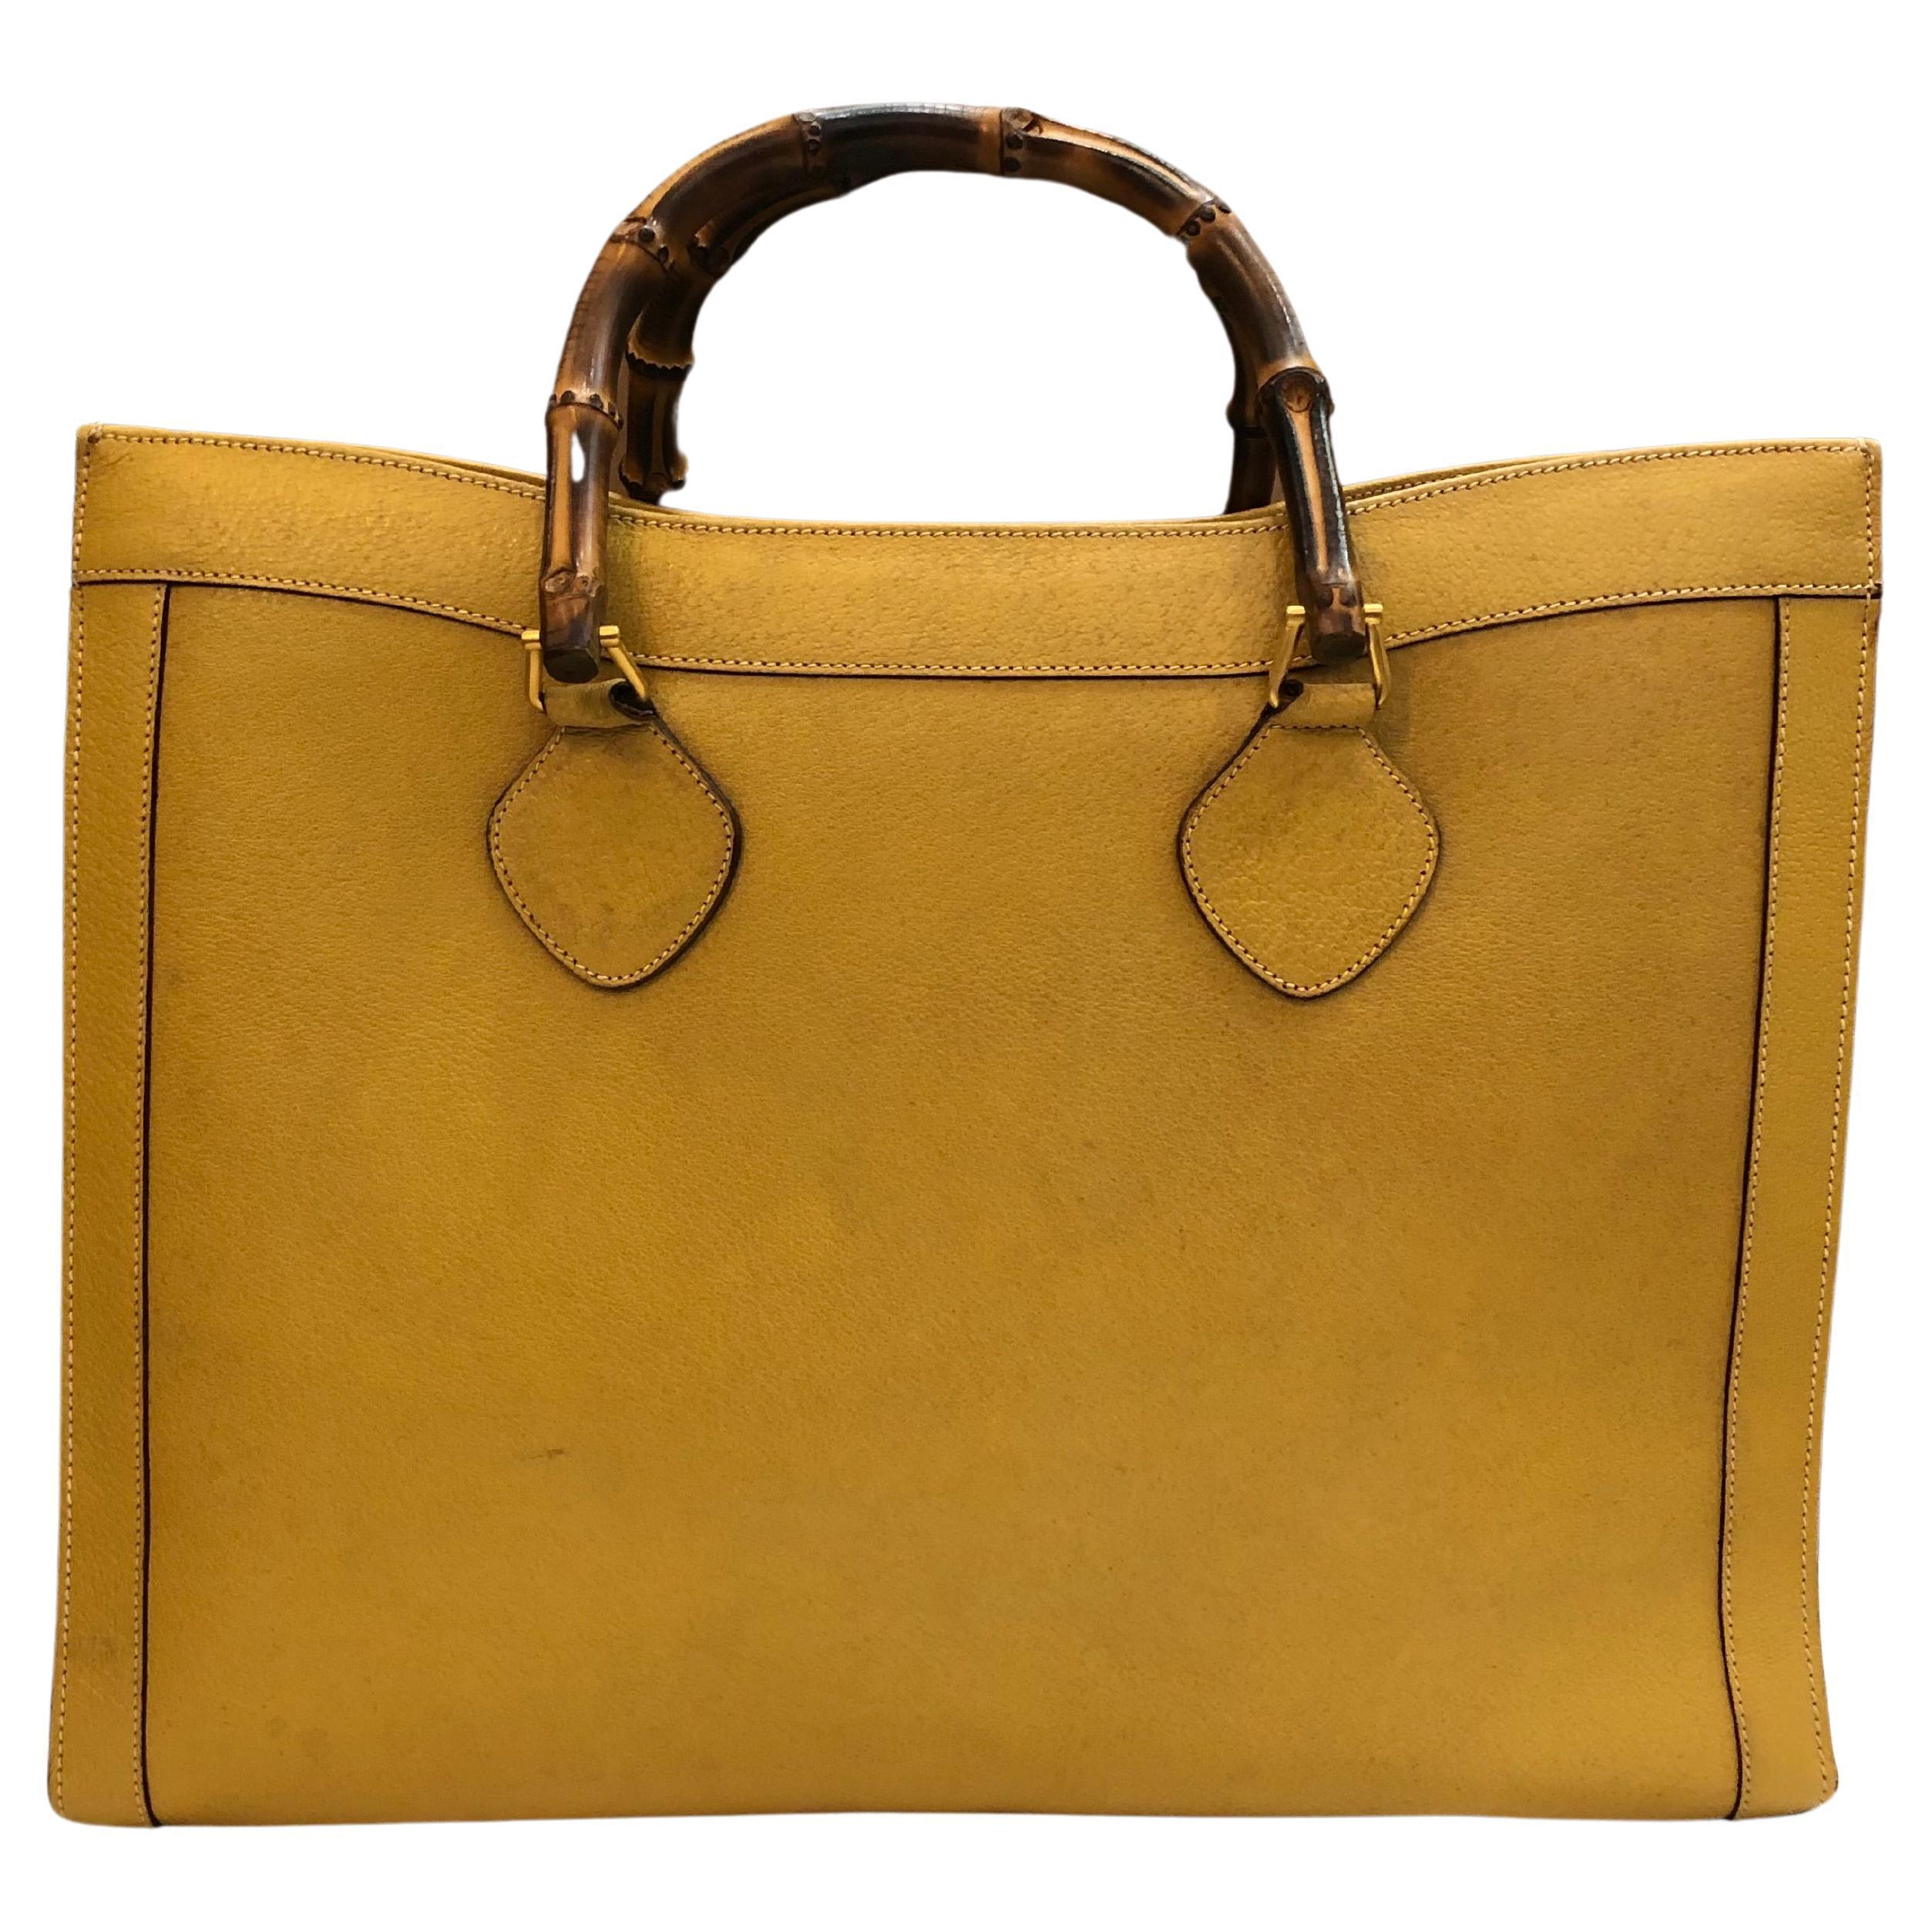 Ce grand sac fourre-tout vintage Gucci Diana en bambou est réalisé en cuir de porc de couleur jaune, avec des ferrures dorées mates et de solides anses en bambou. Le large couvercle s'ouvre sur un seul compartiment spacieux. L'intérieur en cuir